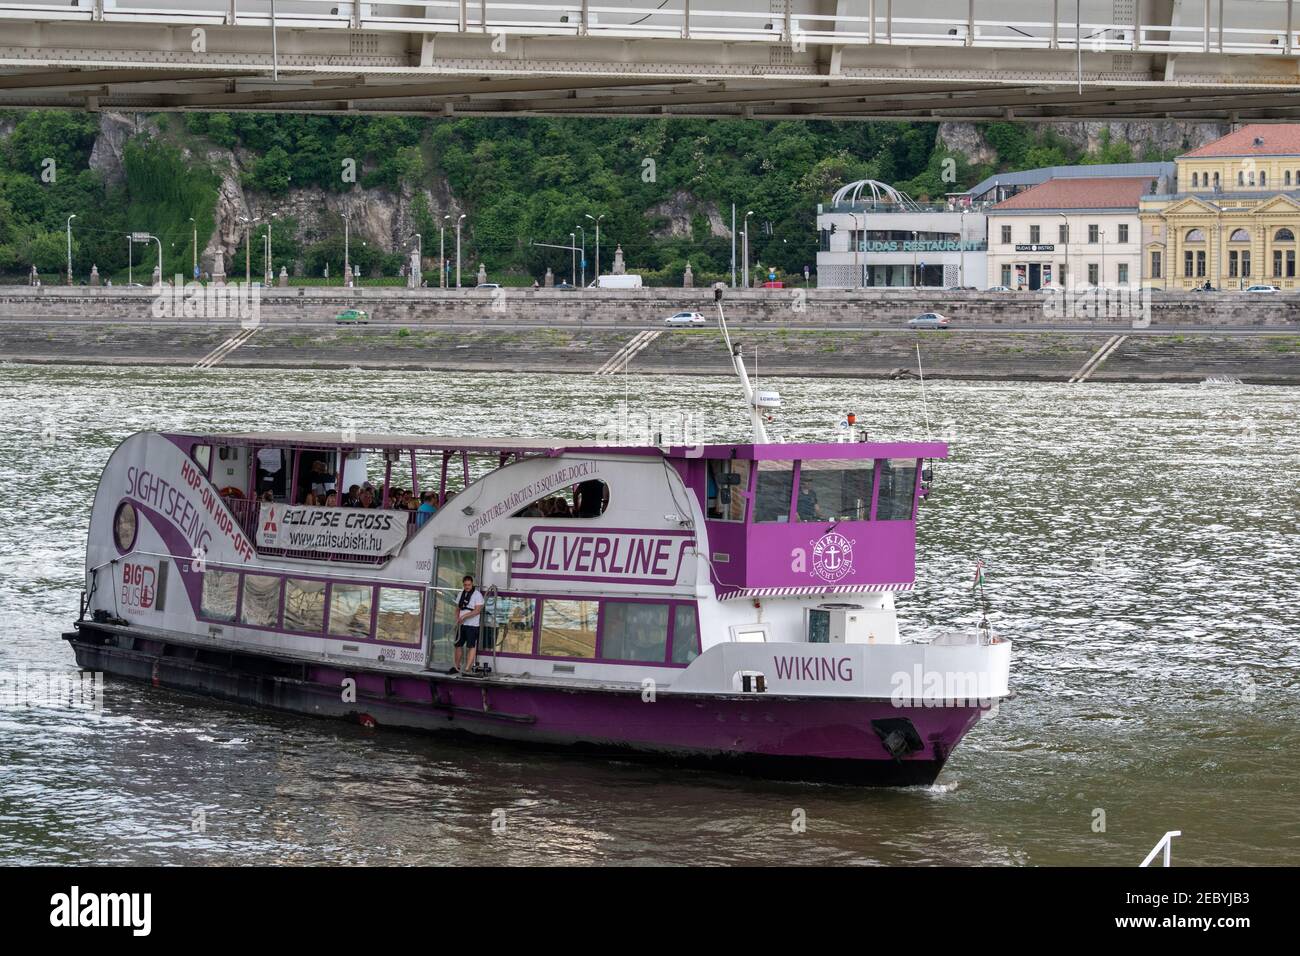 Cruceros Silverline, Tours en barco por el Danubio, Budapest, Hungría. Foto de stock